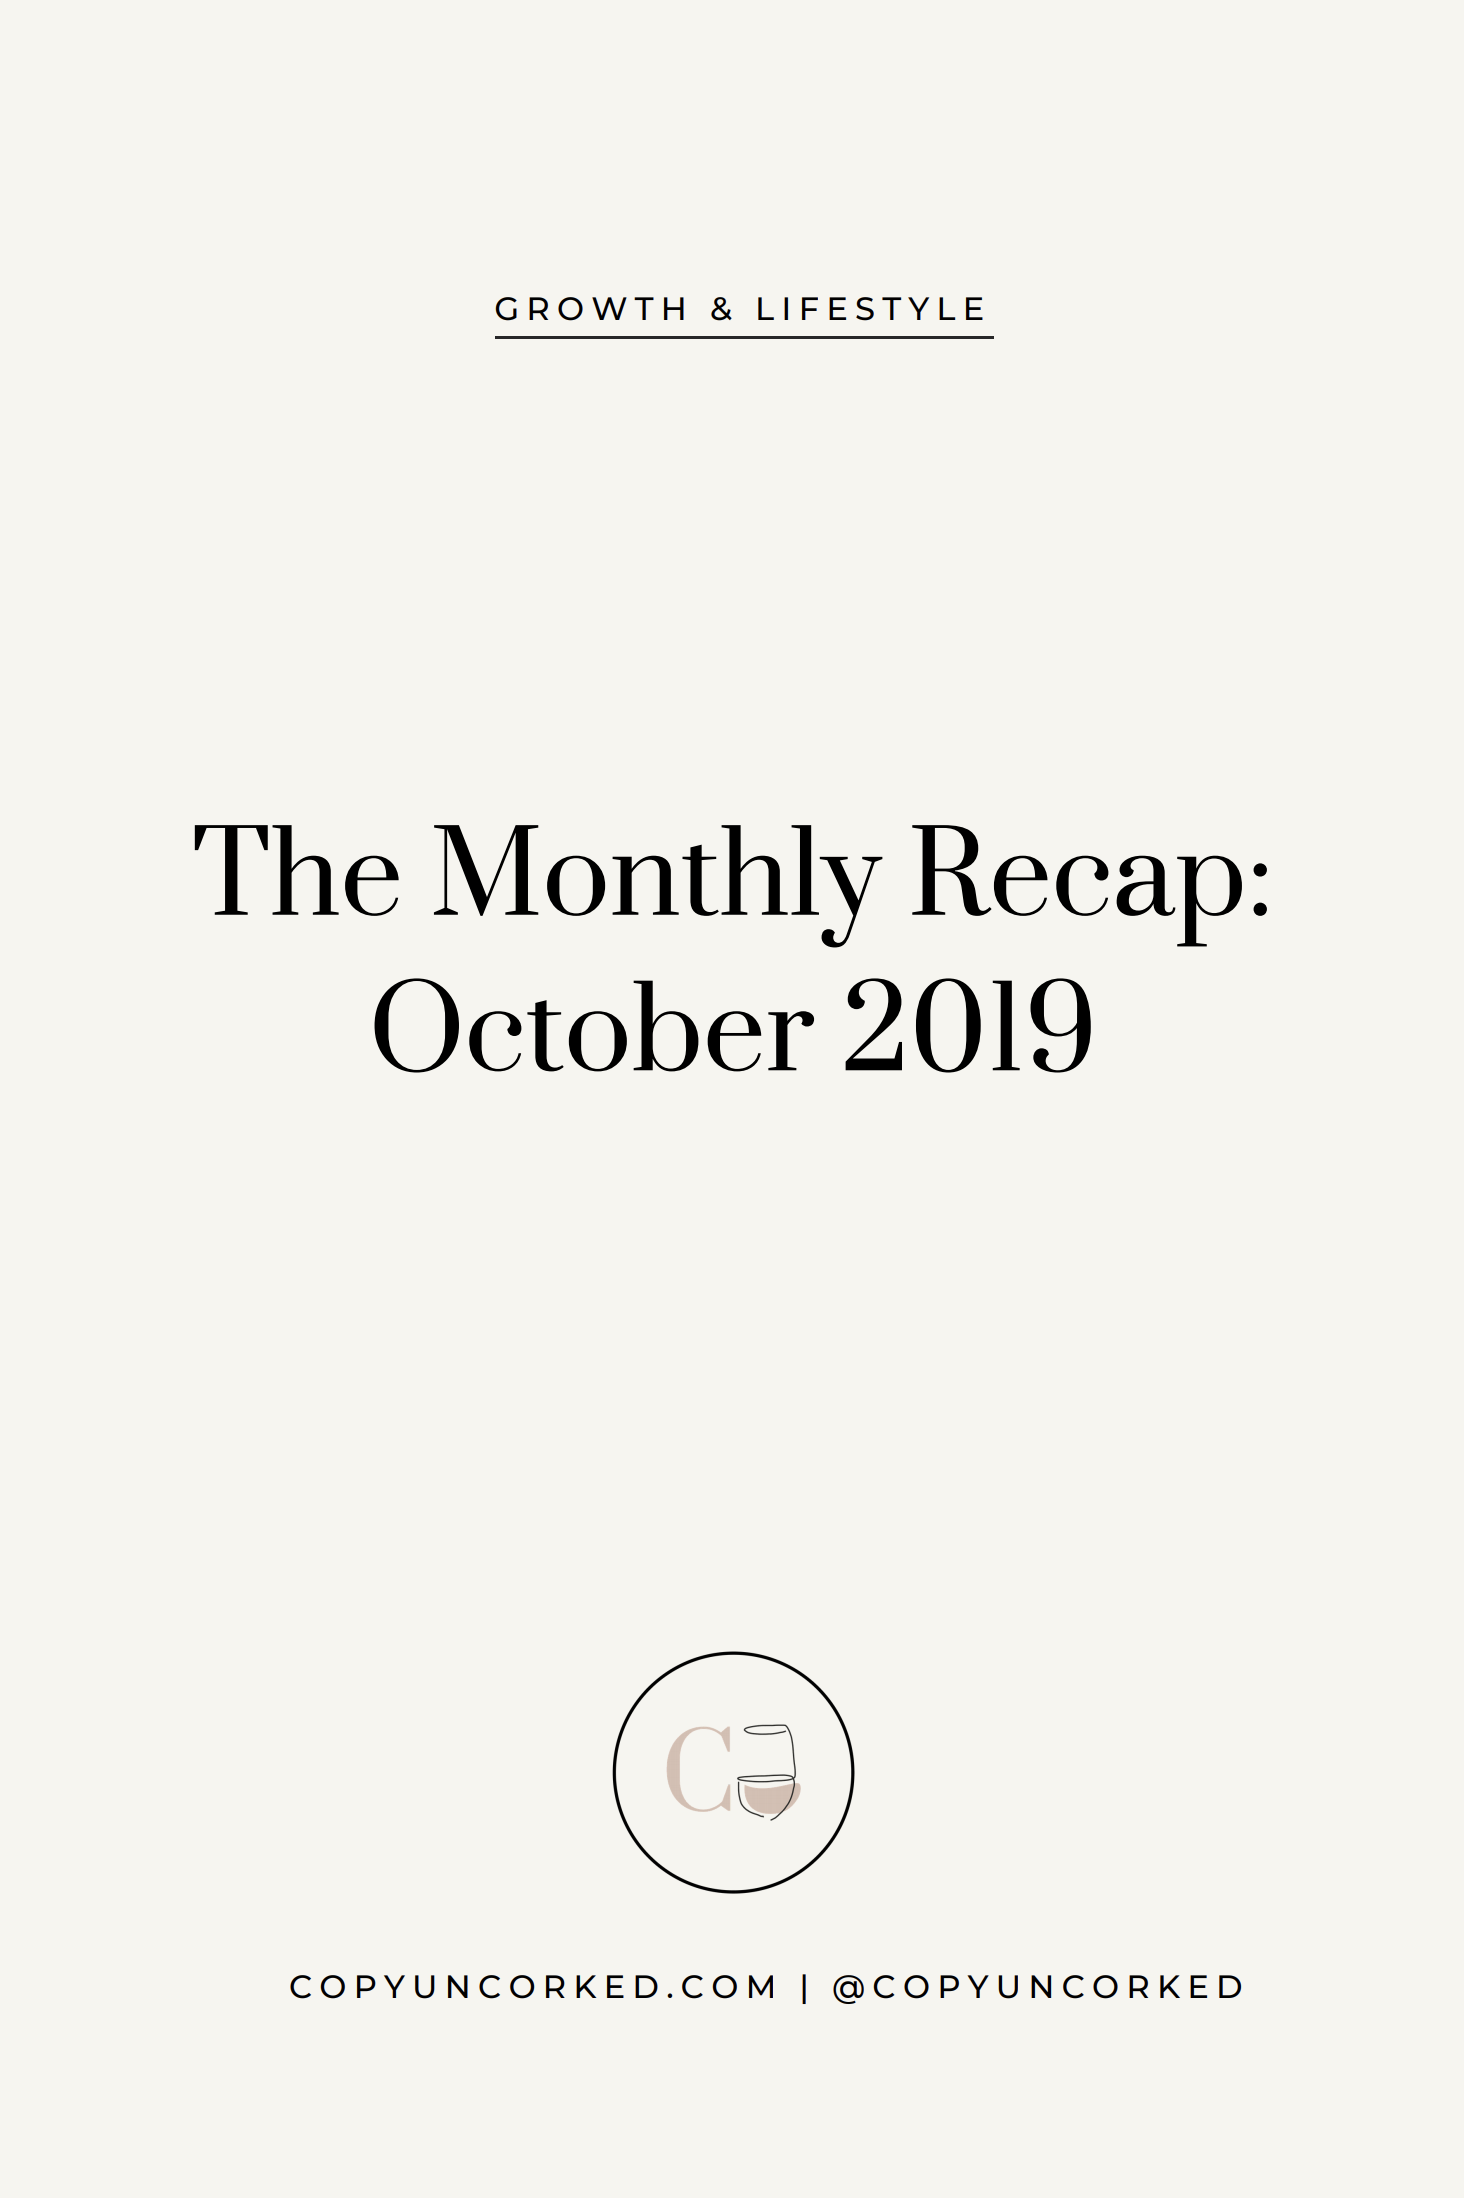 The Monthly Recap: October 2019 - copyuncorked.com